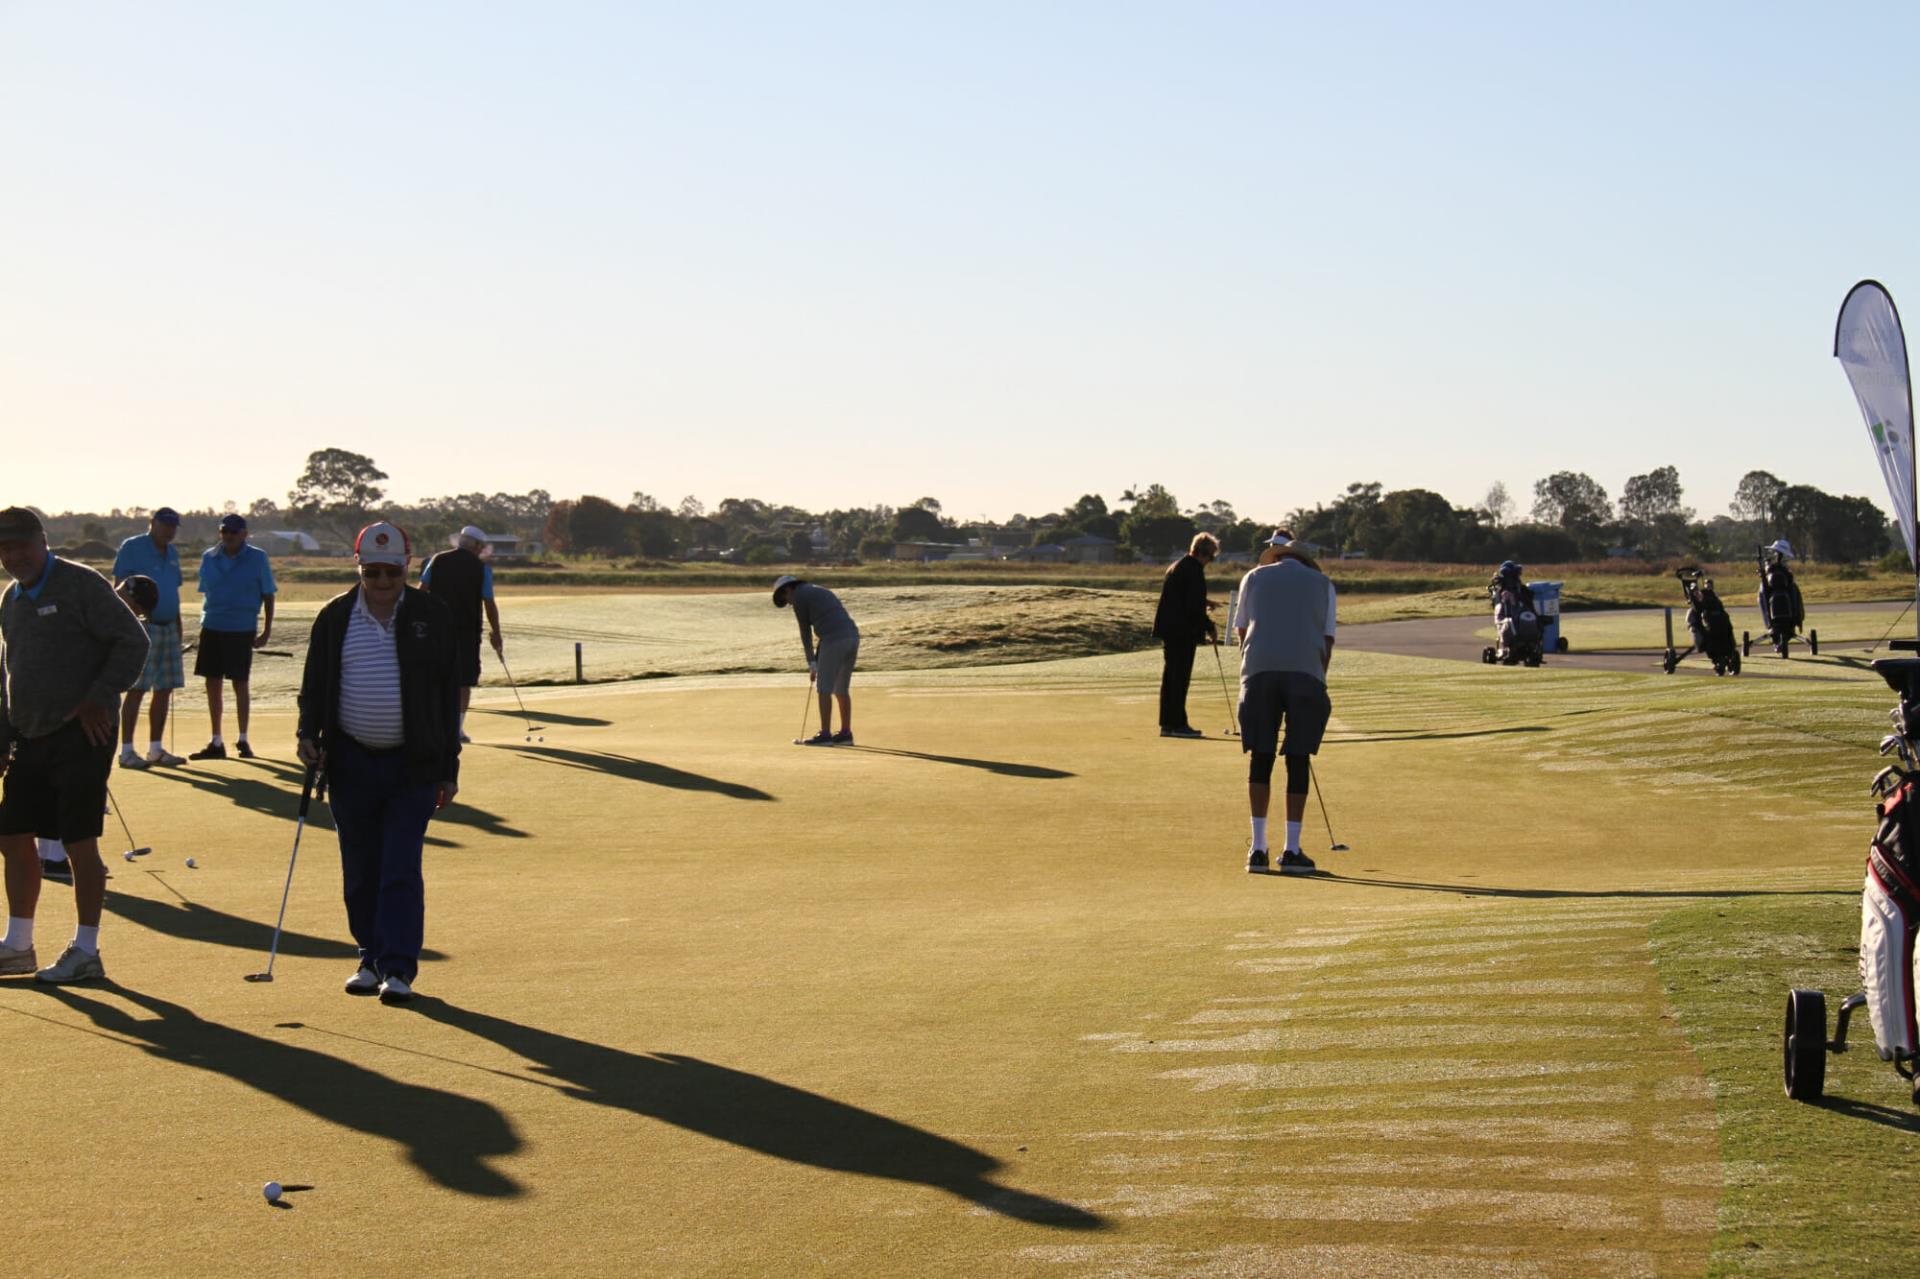 46th Annual Australian Golfing Fellowship of Rotarians Golf Tournament